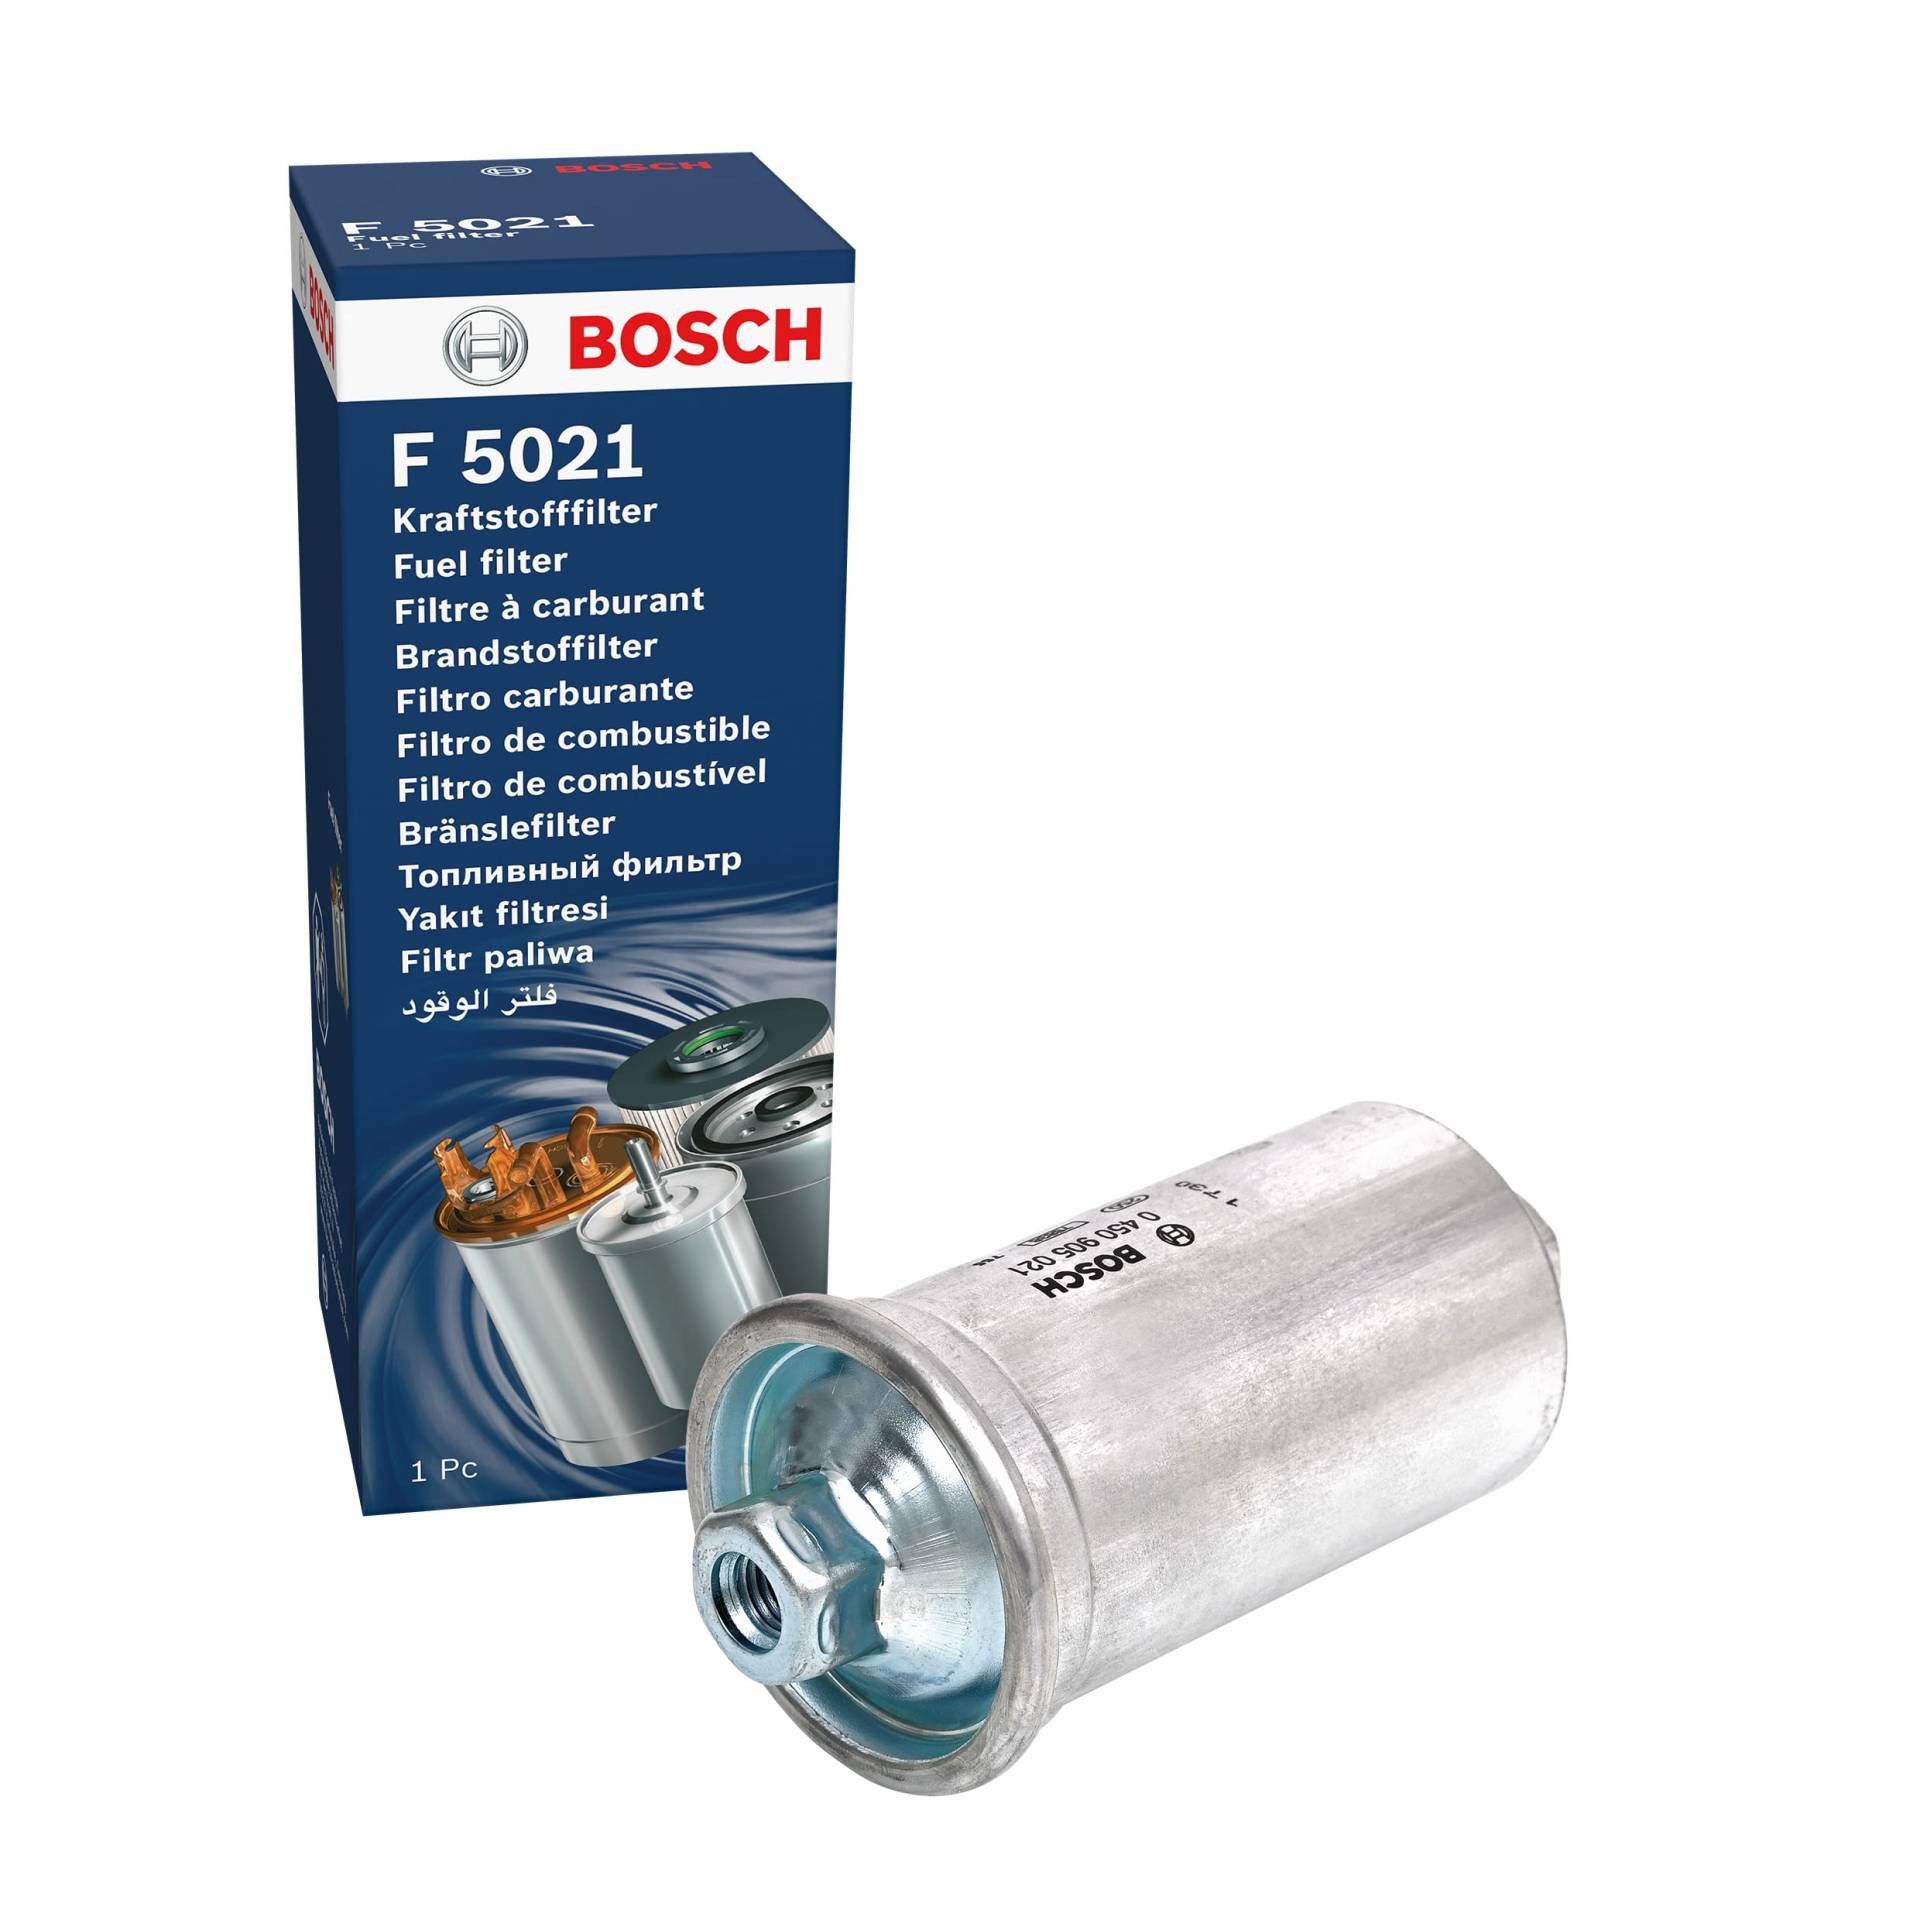 Bosch F5021 - Benzinfilter Auto von Bosch Automotive